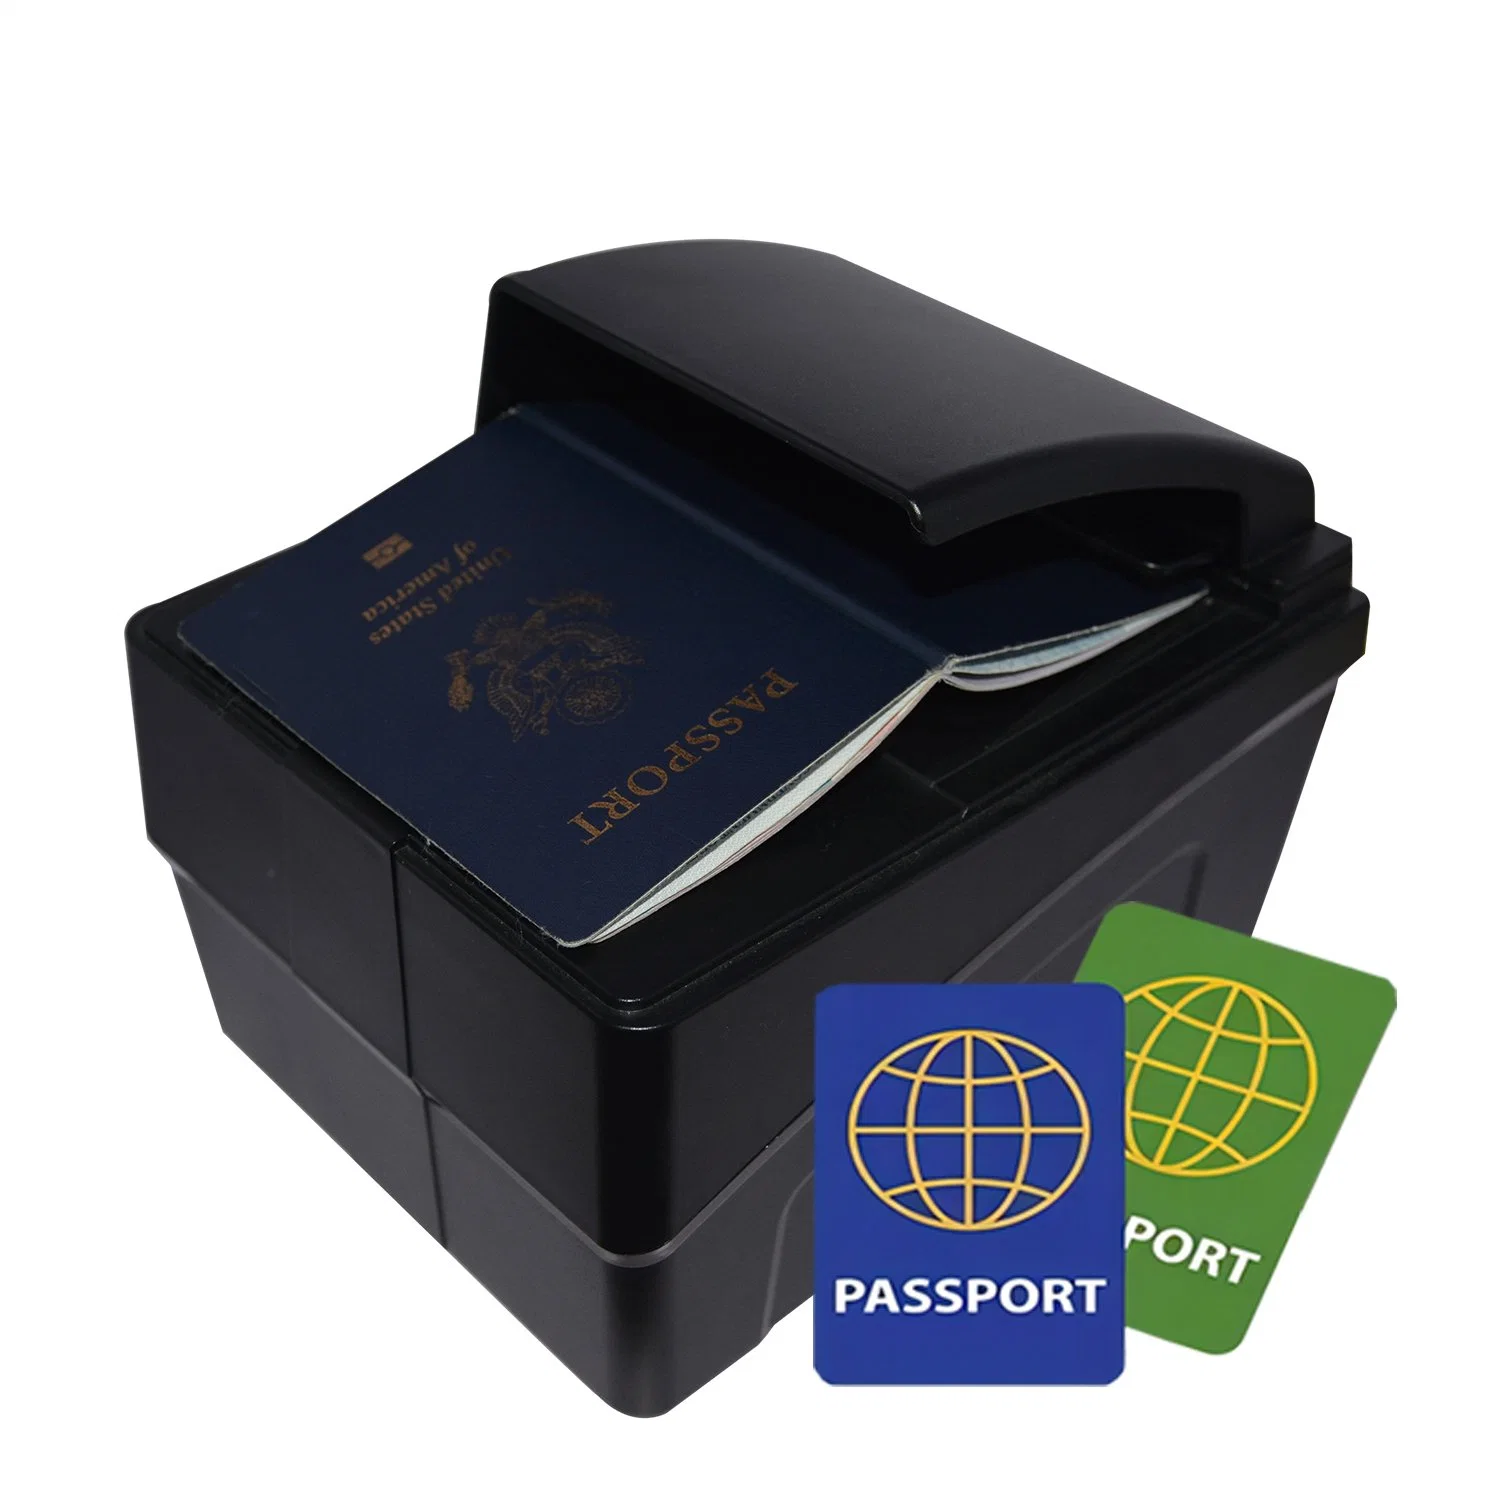 قارئ جوازات السفر الإلكتروني بالبصمة والهوية الجوالة والمعفاة من الرسوم في المطار (PPR-100A)